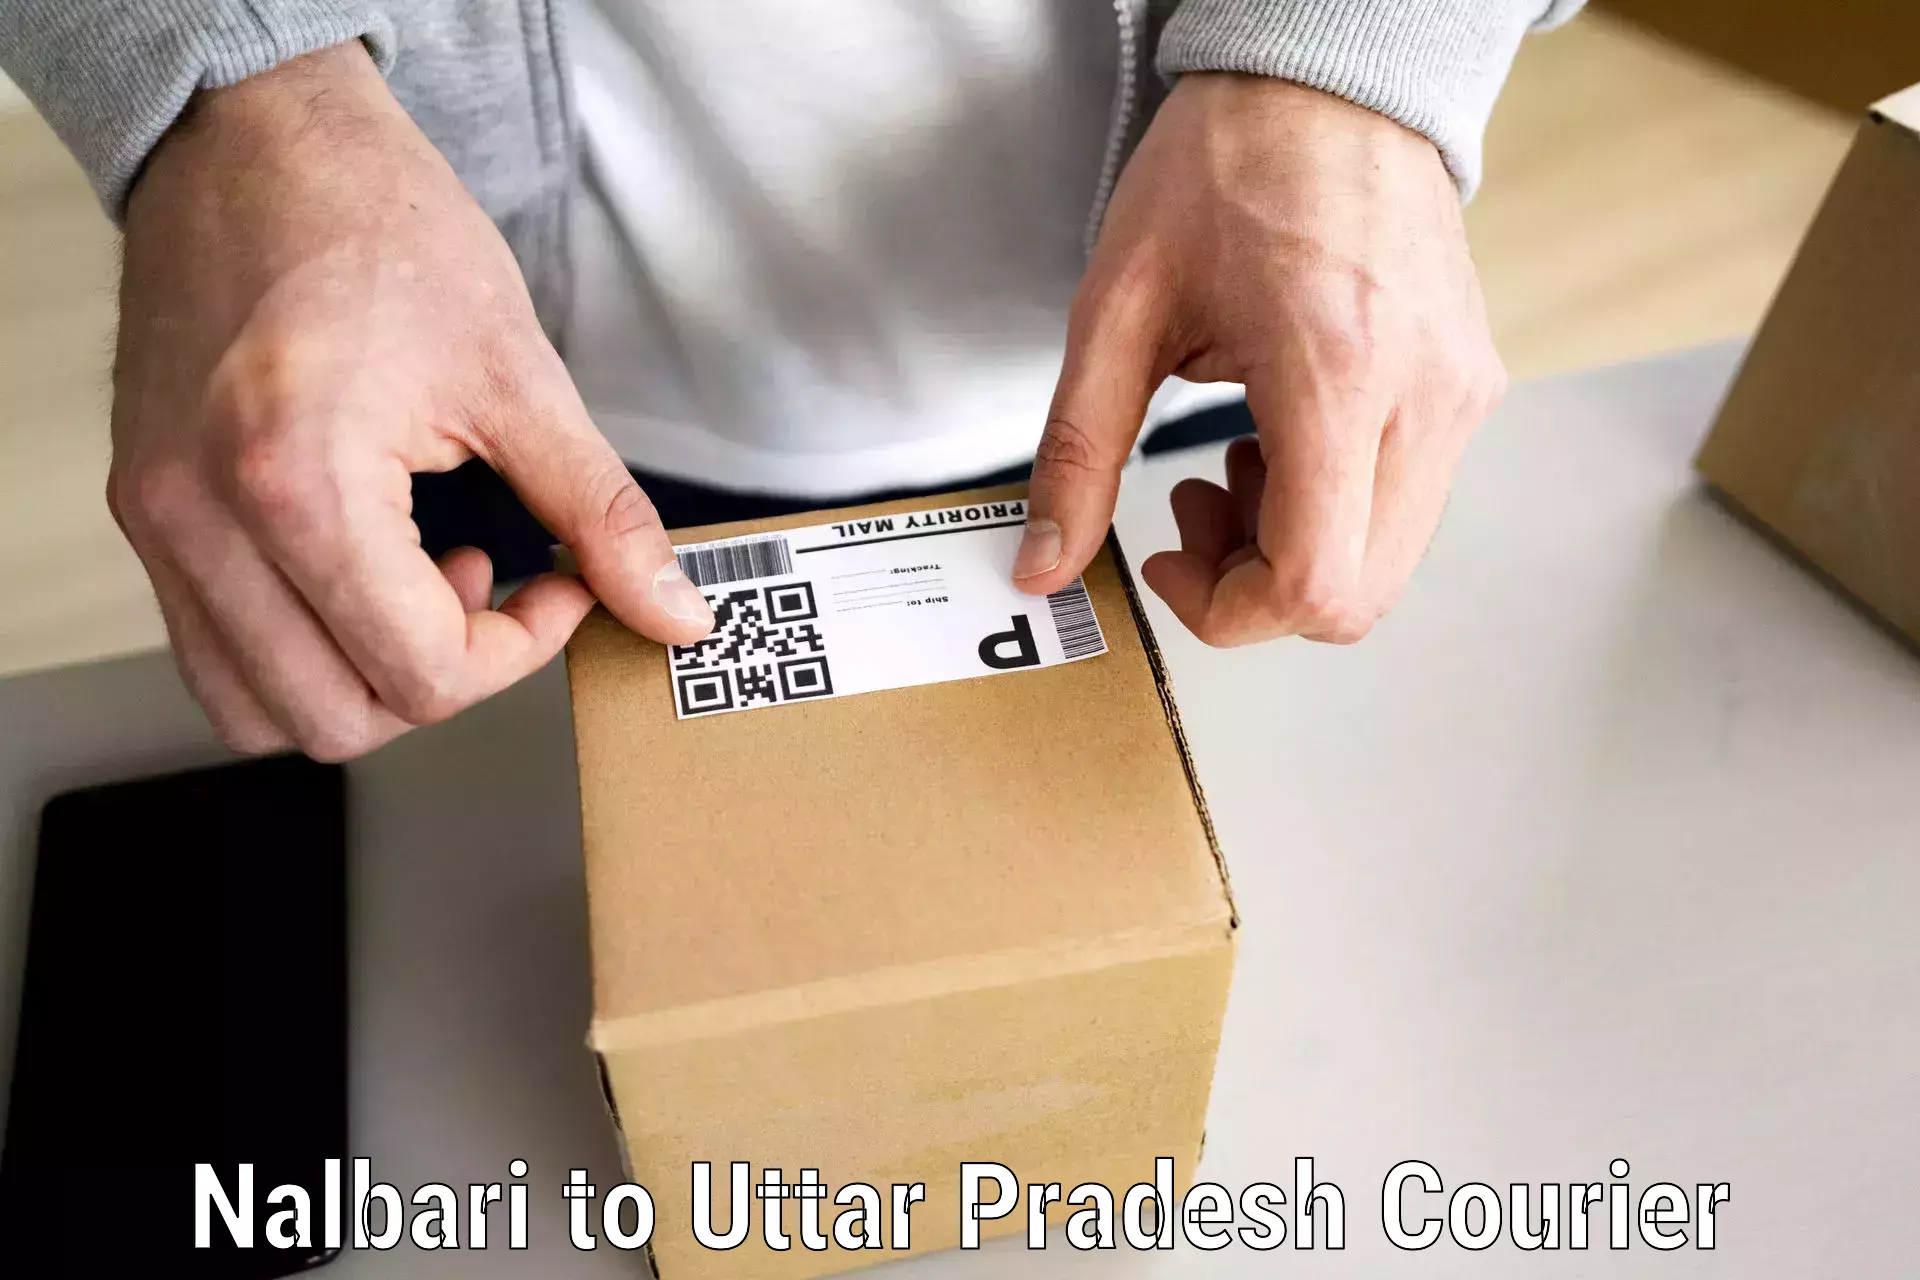 Professional furniture movers Nalbari to Uttar Pradesh